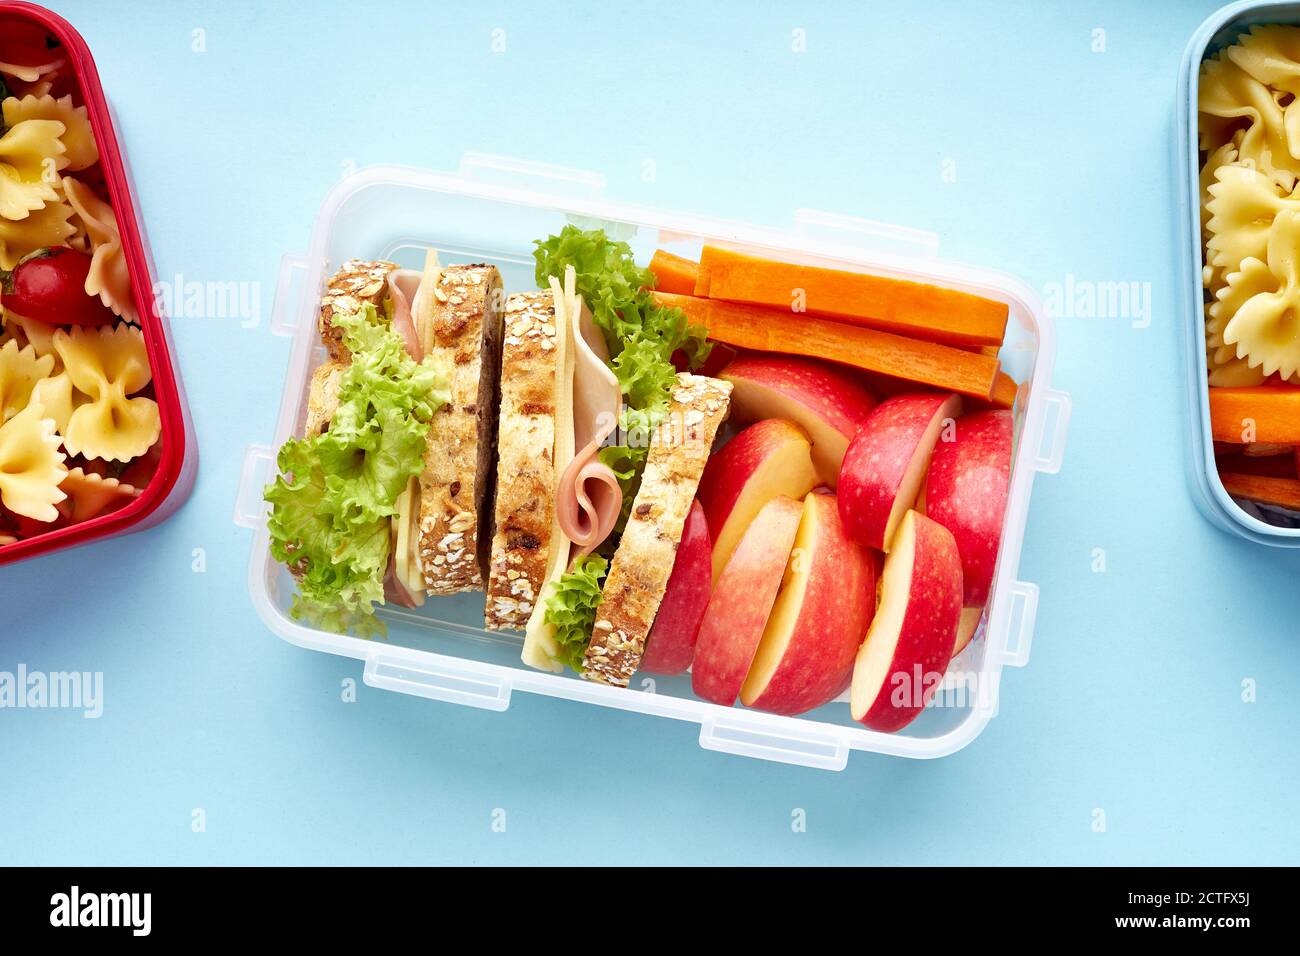 Vue de dessus des boîtes à lunch de l'école avec divers repas sains nutritifs sur fond bleu Banque D'Images